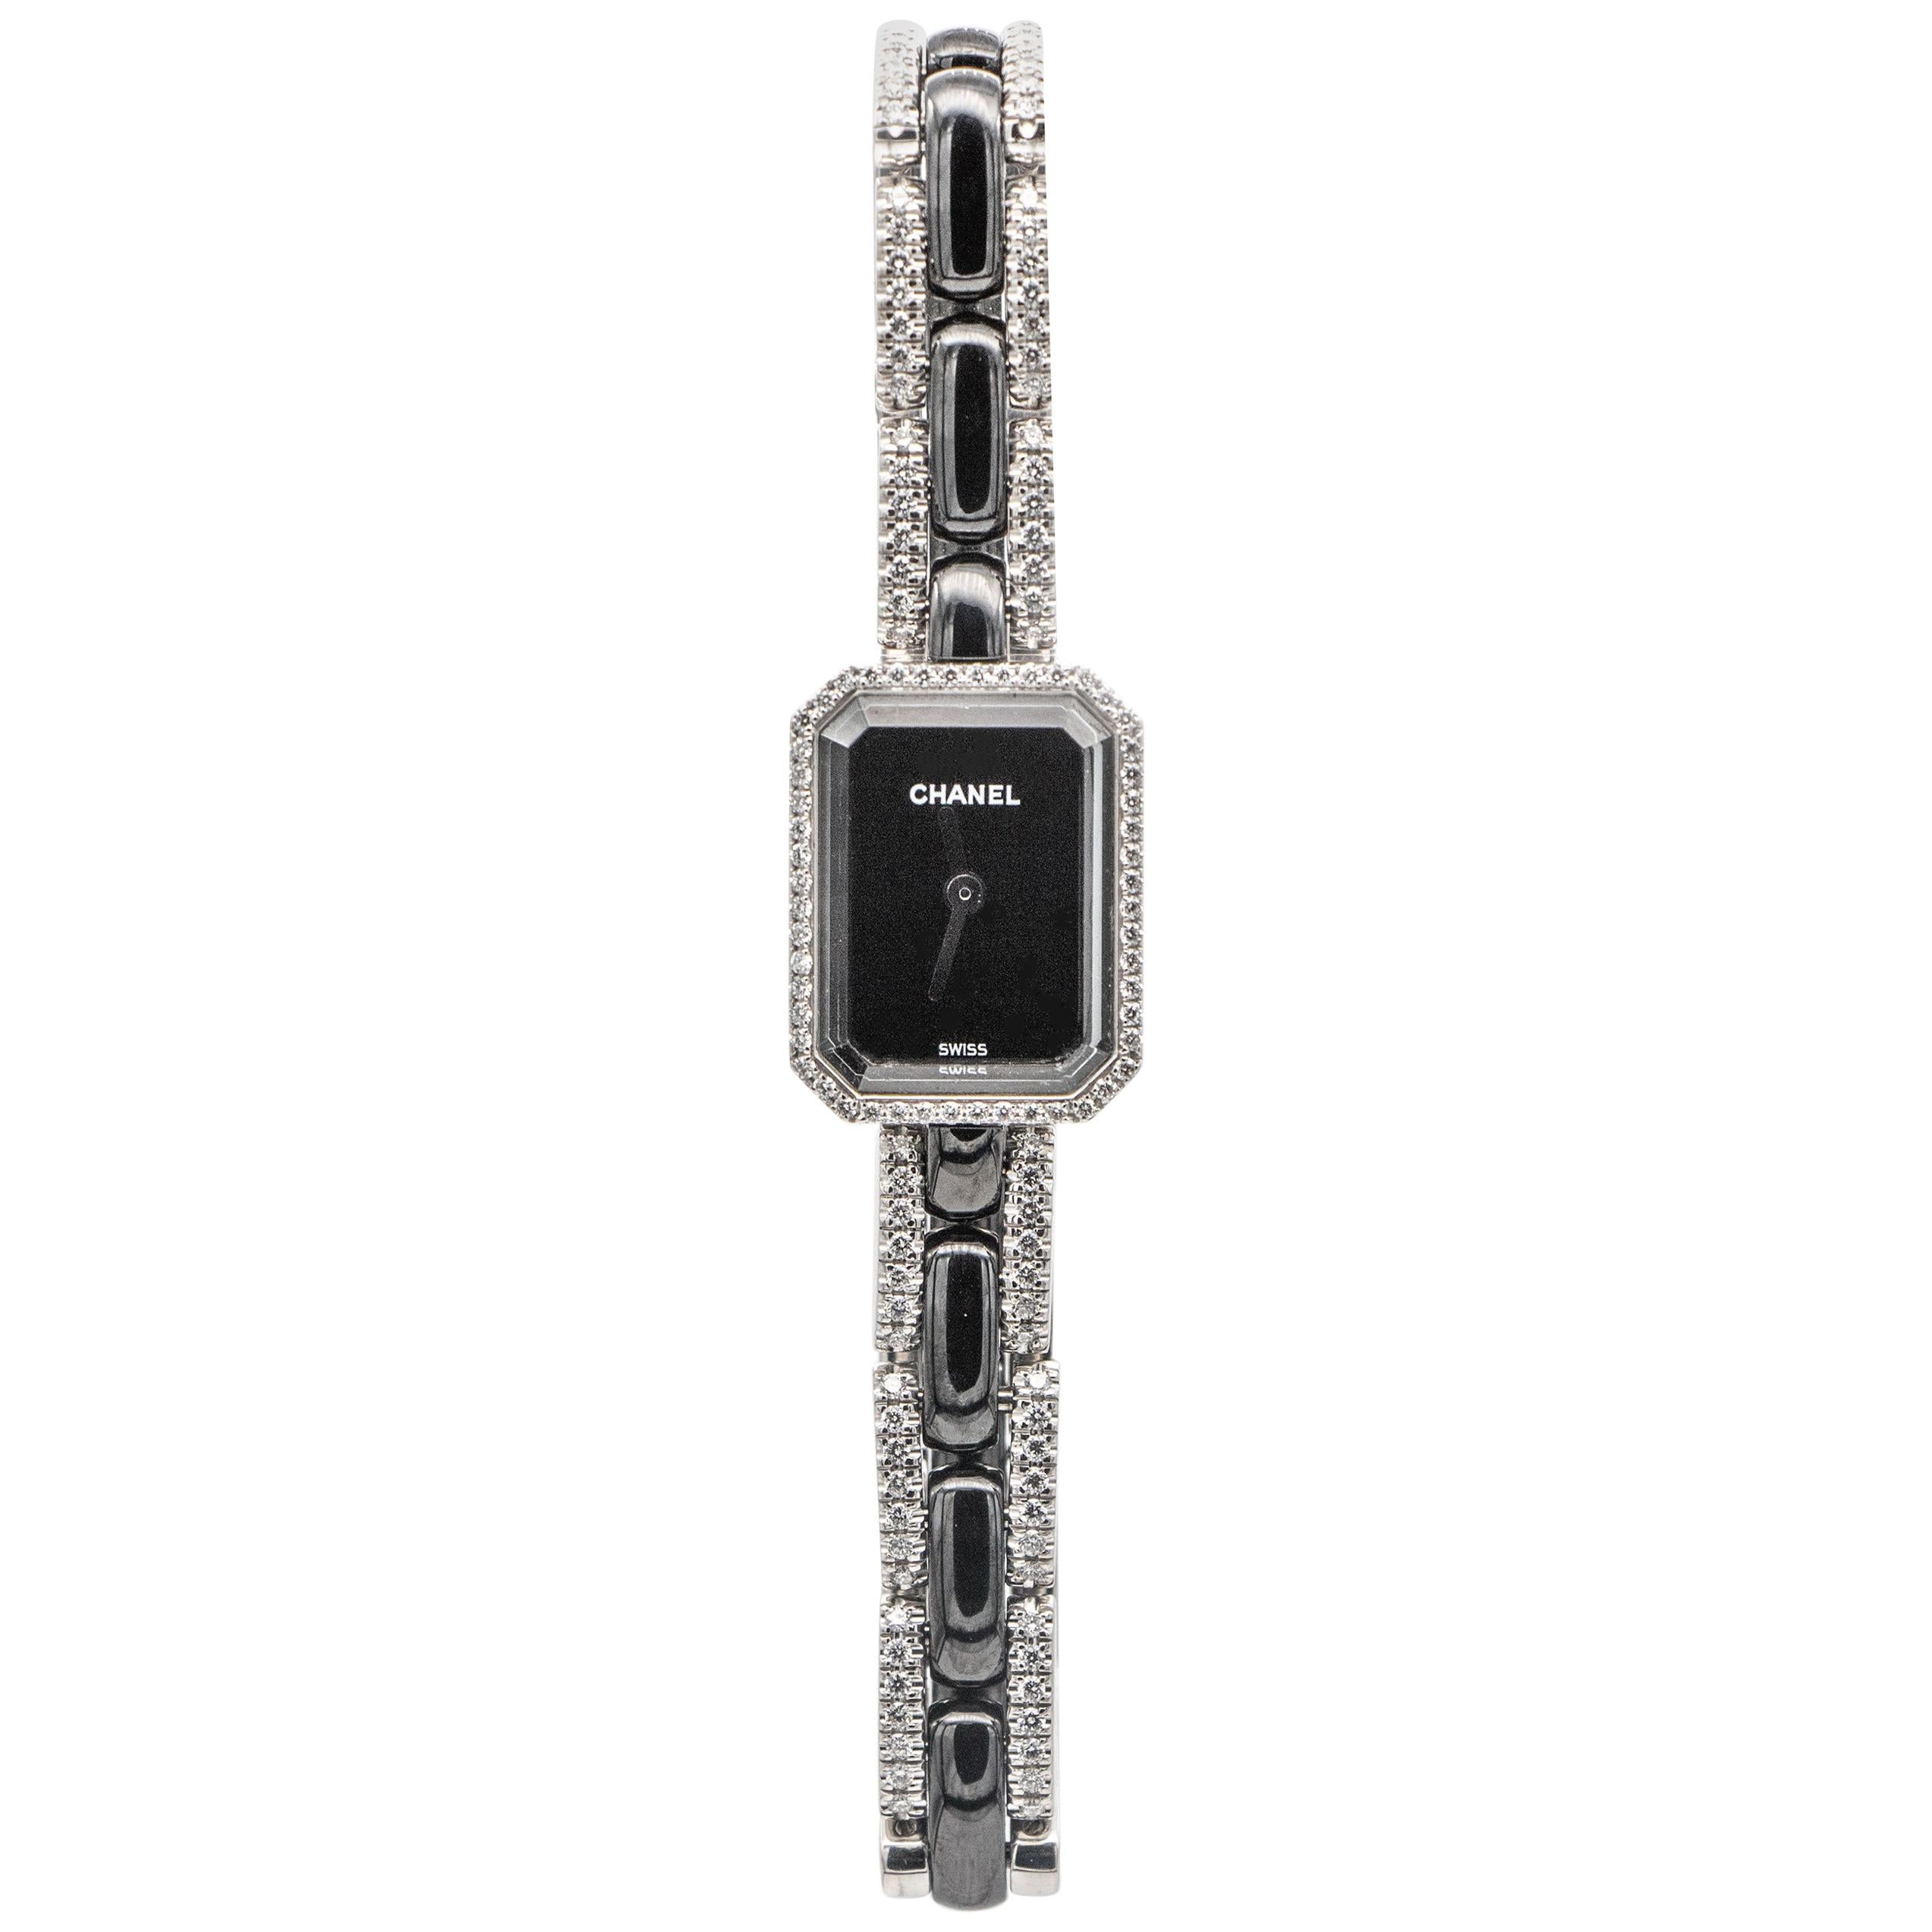 Rare Chanel Premiere Mini Black Ceramic Watch With Diamonds 1.49 Carats 18K Gold